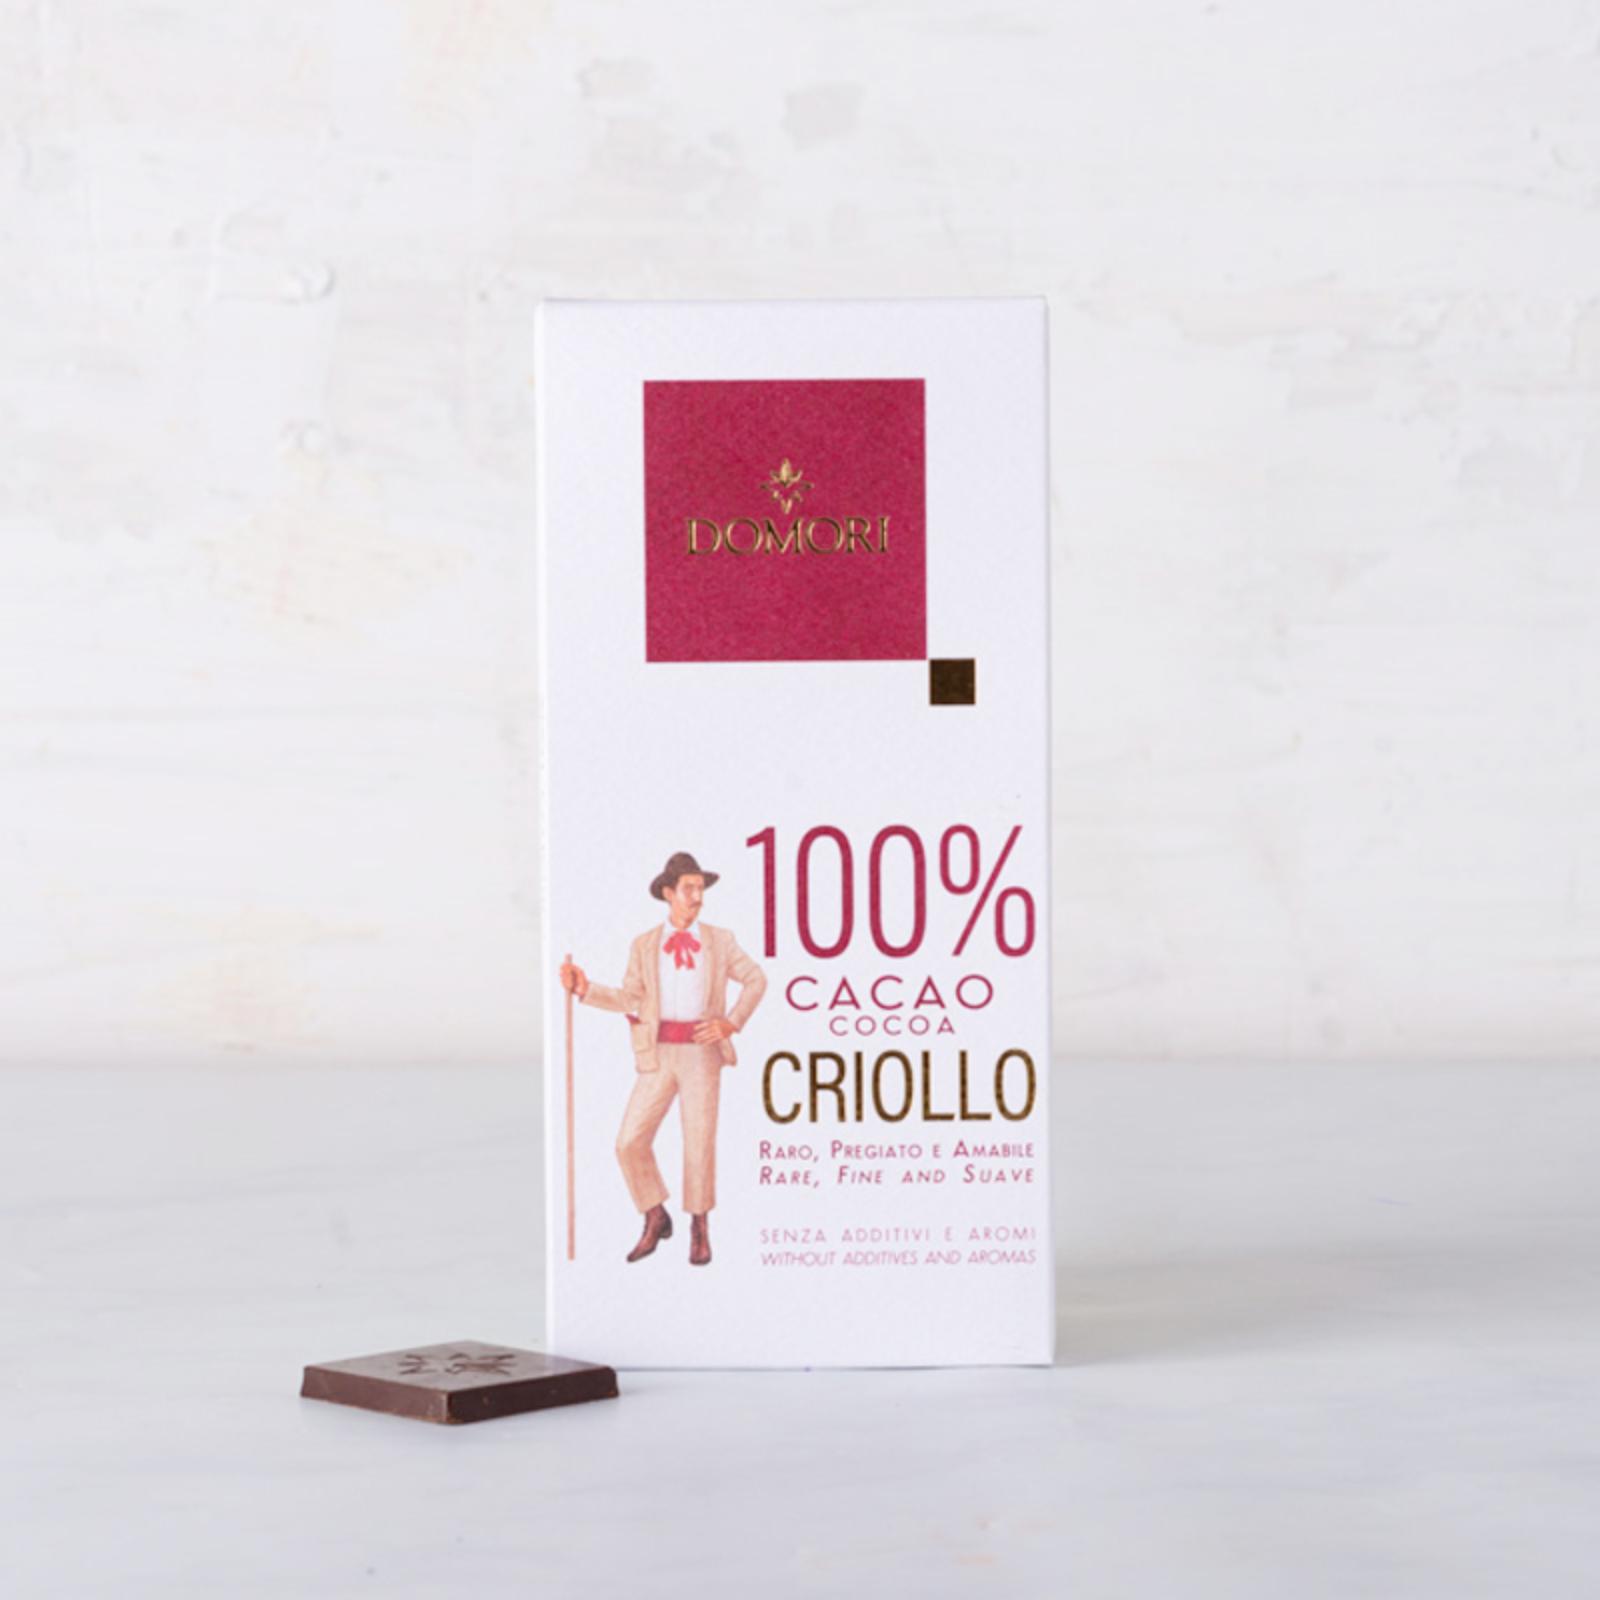 Cioccolato Criollo Venezuela 100%